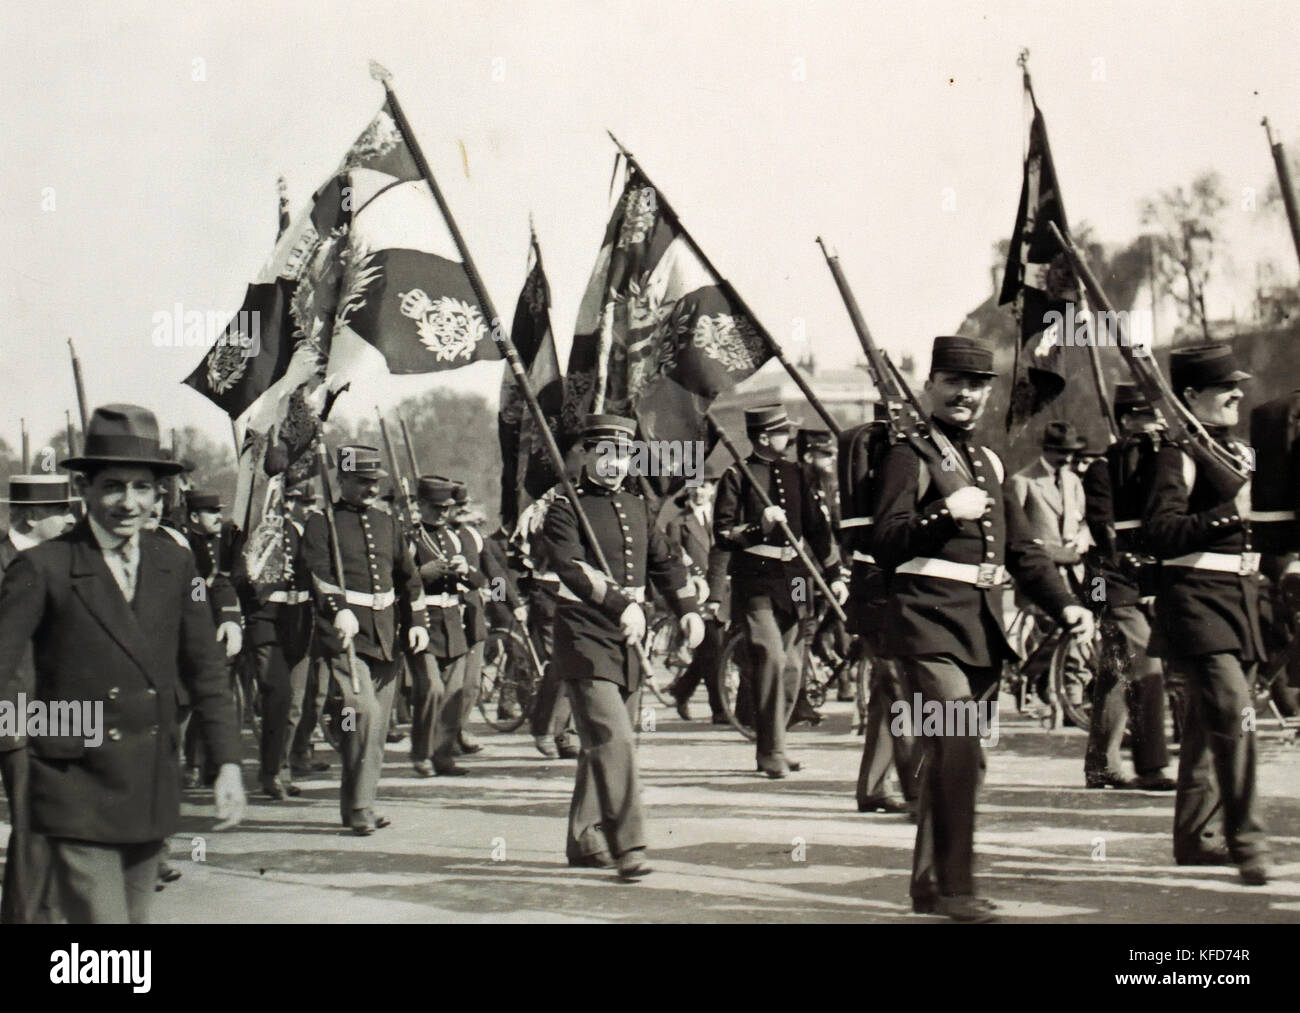 Transfert à l'Hôtel des Invalides de drapeaux allemands capturés, Paris 7 octobre 1914. La Première Guerre mondiale - Première Guerre mondiale, la Grande Guerre, le 28 juillet 1914 au 11 novembre 1918. Banque D'Images